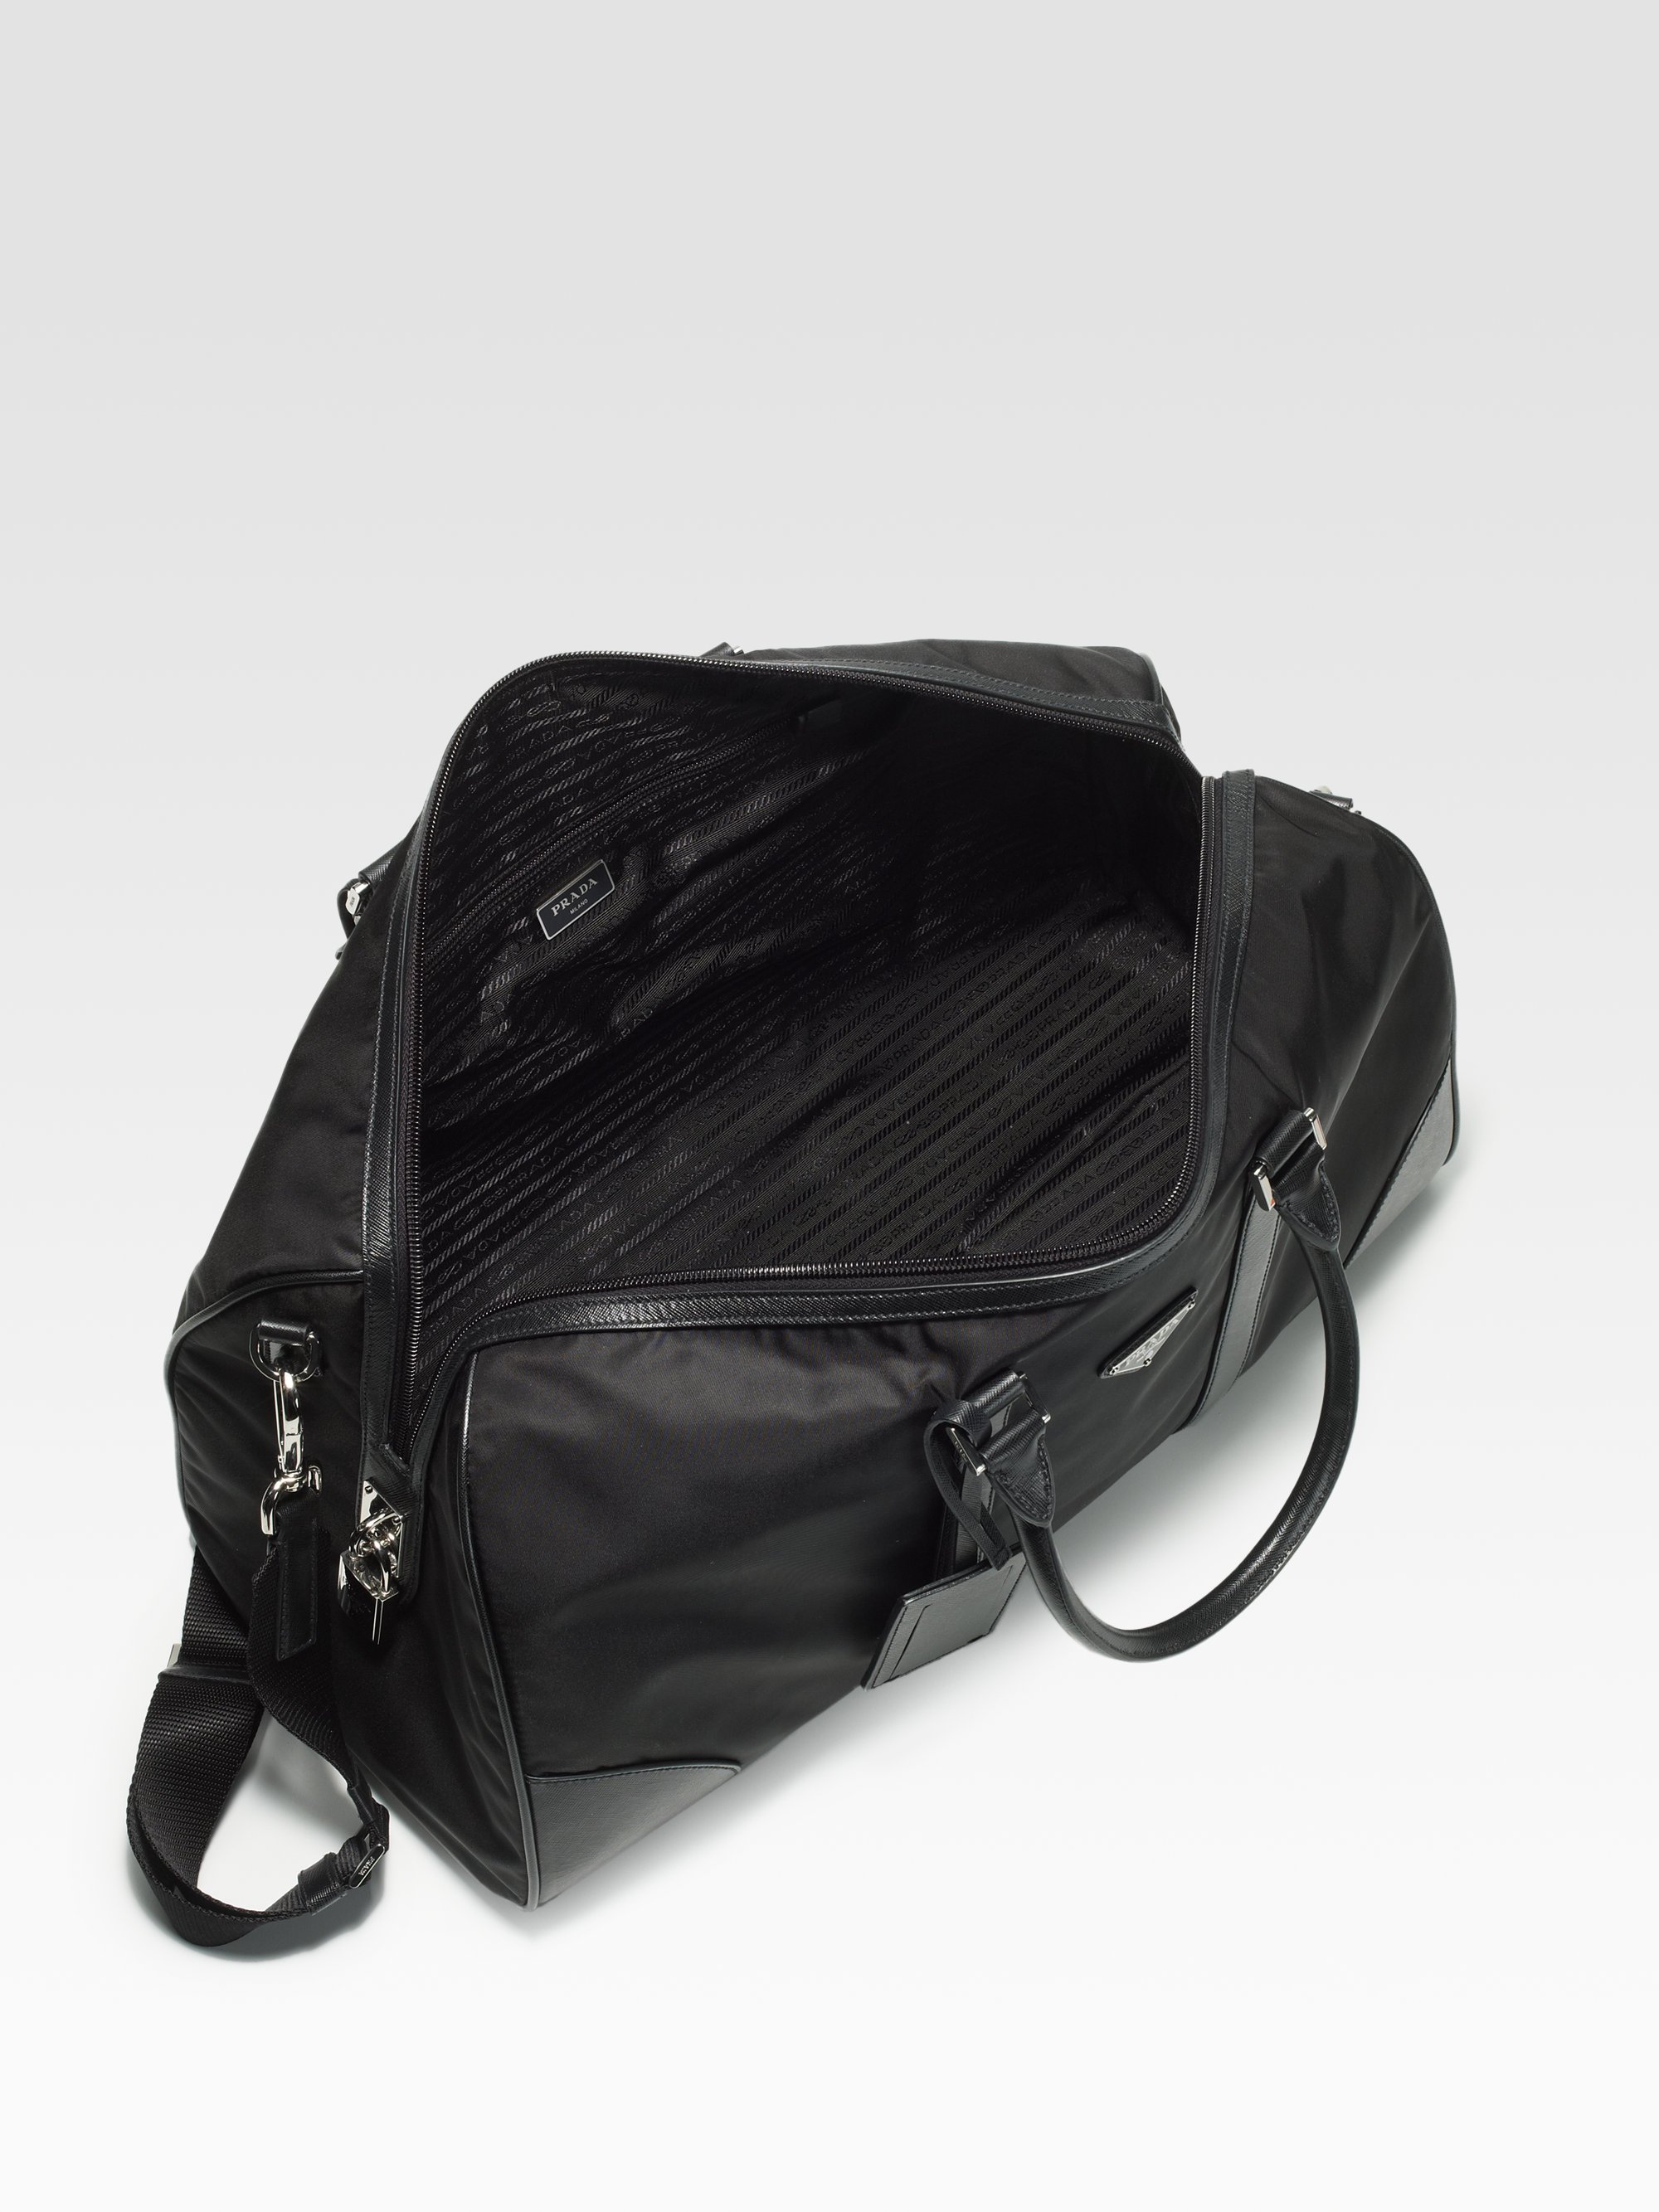 Download Lyst - Prada Nylon Duffel Bag in Black for Men